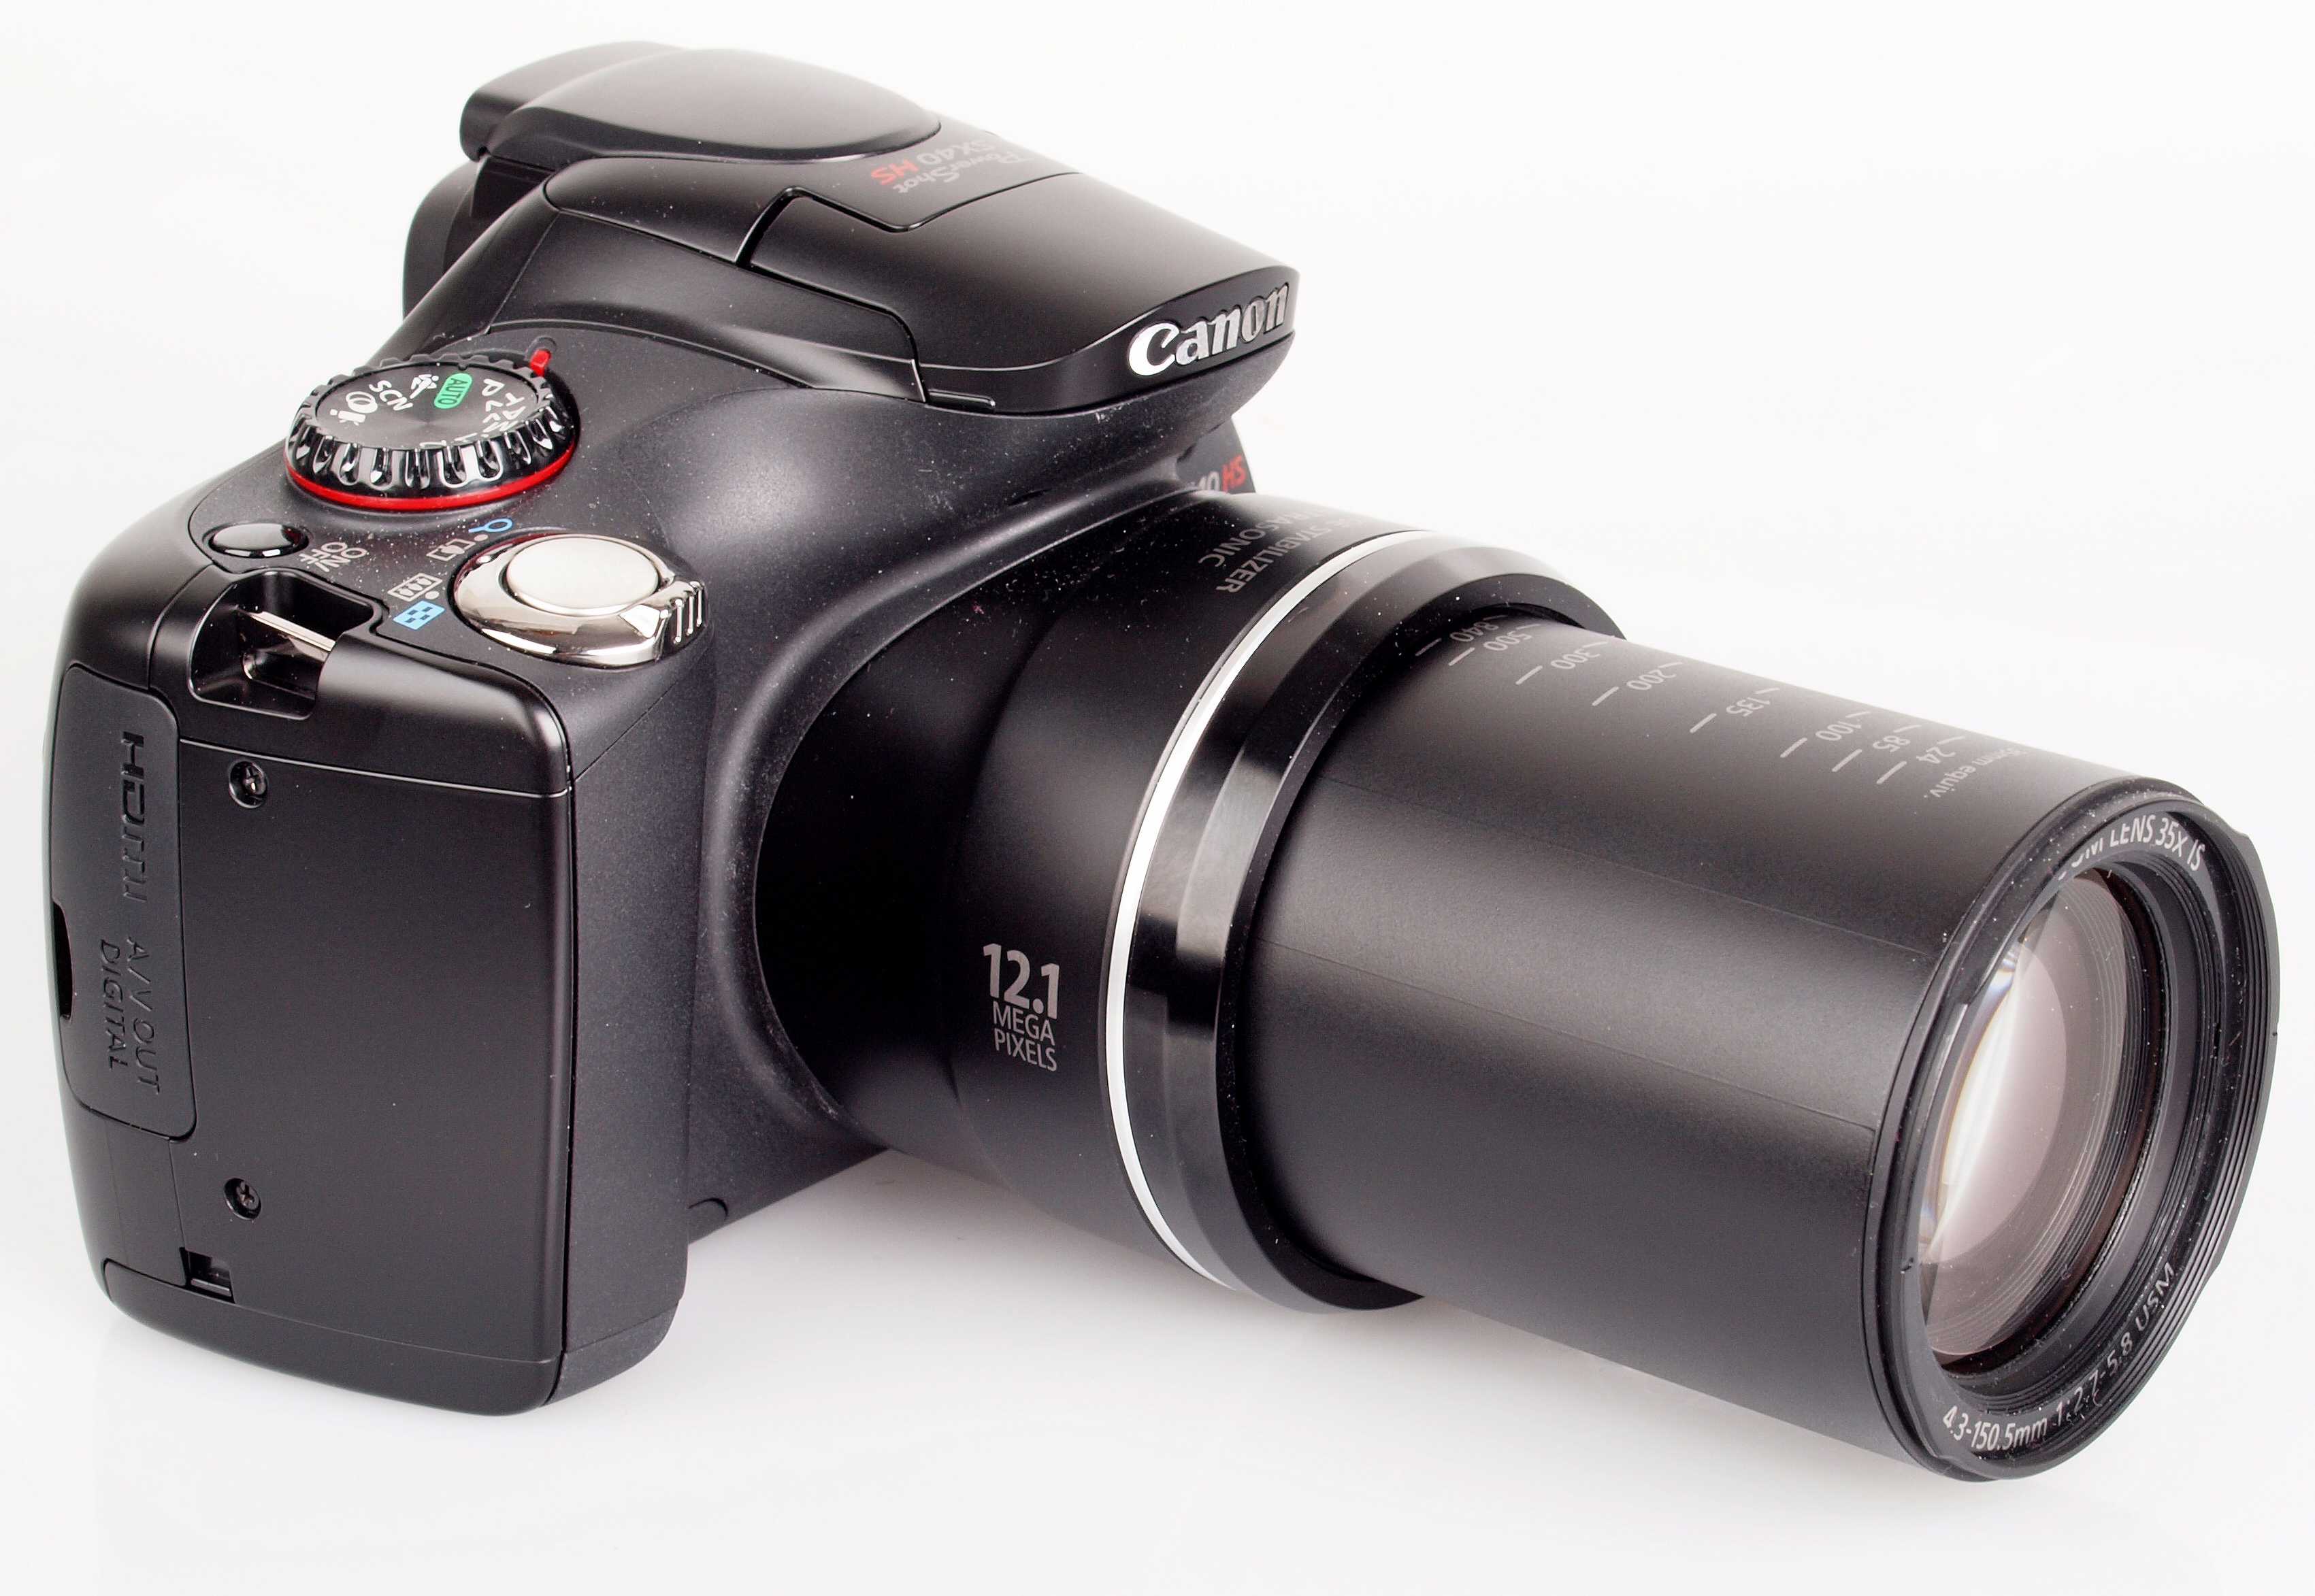 Canon powershot sx40 купить по акционной цене , отзывы и обзоры.